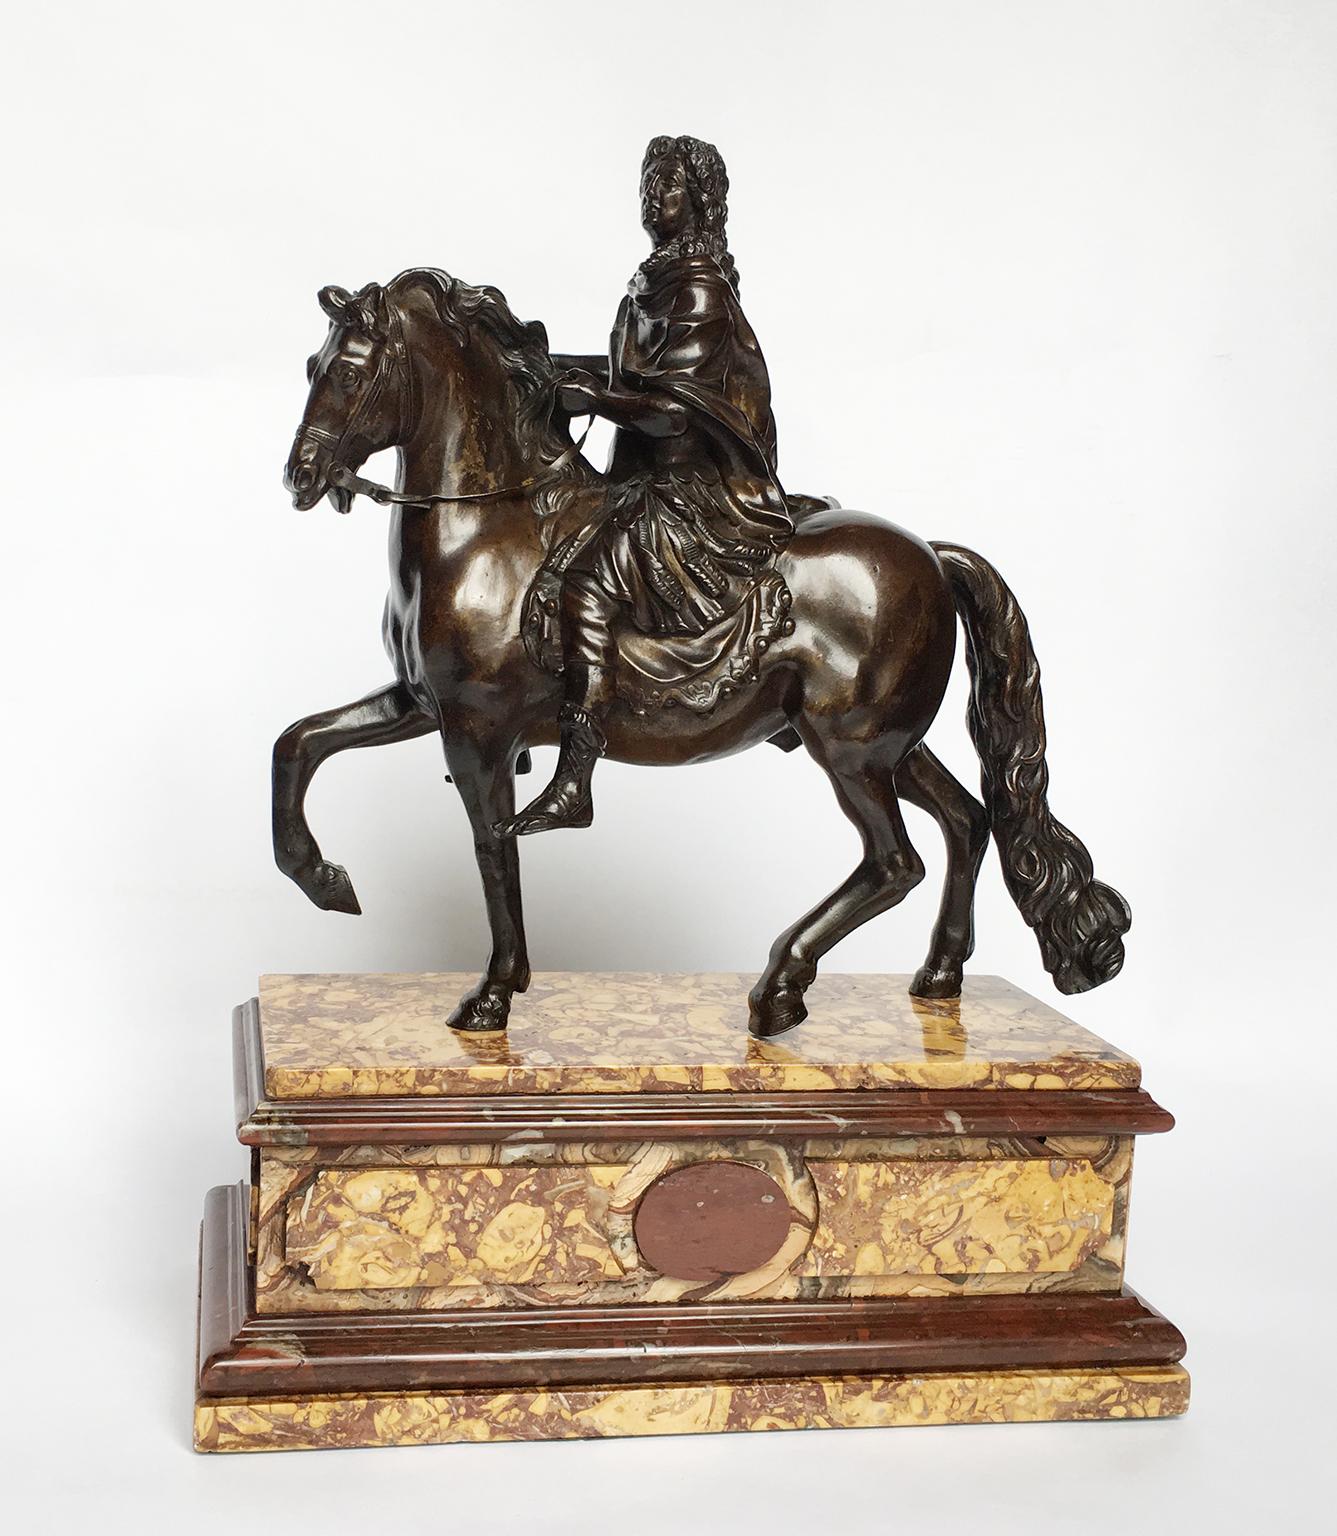 Baroque French Iron Sculpture of Louis XIV on Horseback, circa 1880